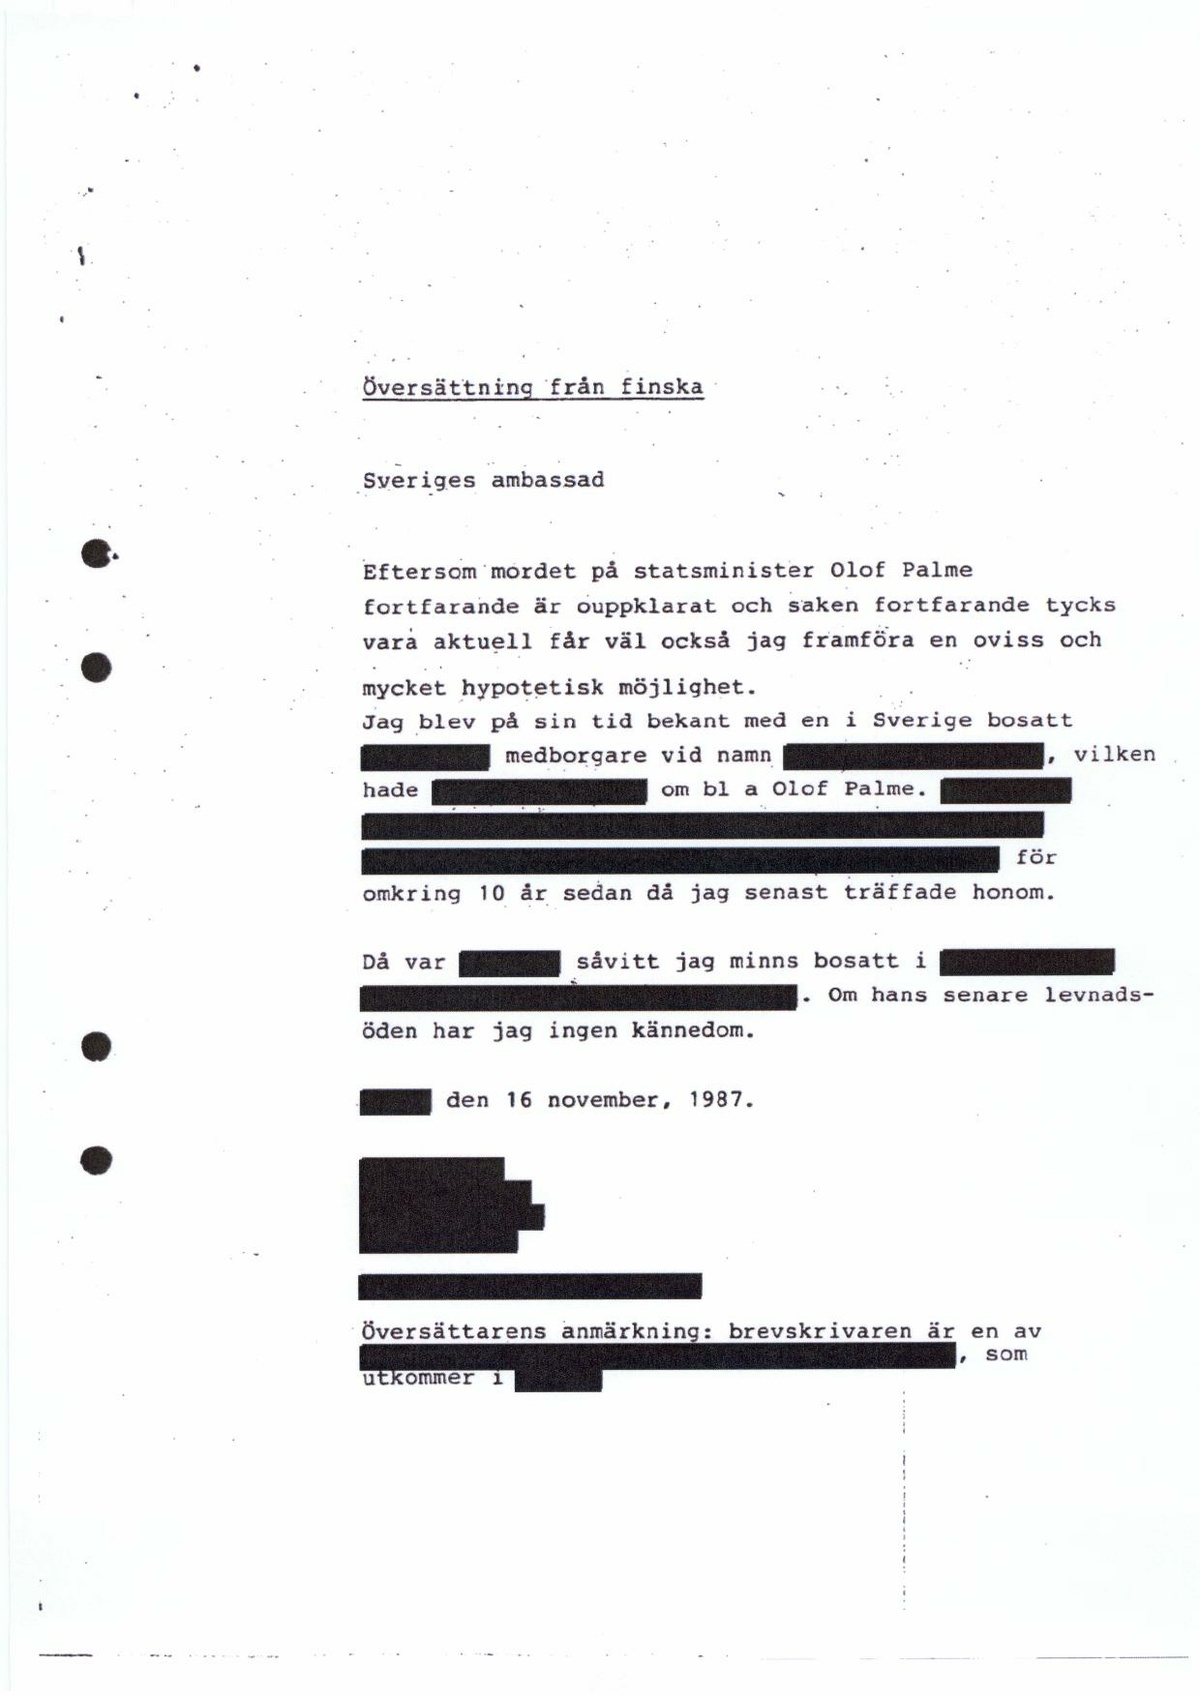 Pol-1987-11-27 HK12714-01 Tips-och-brev-ambassaden-Helsingfors.pdf